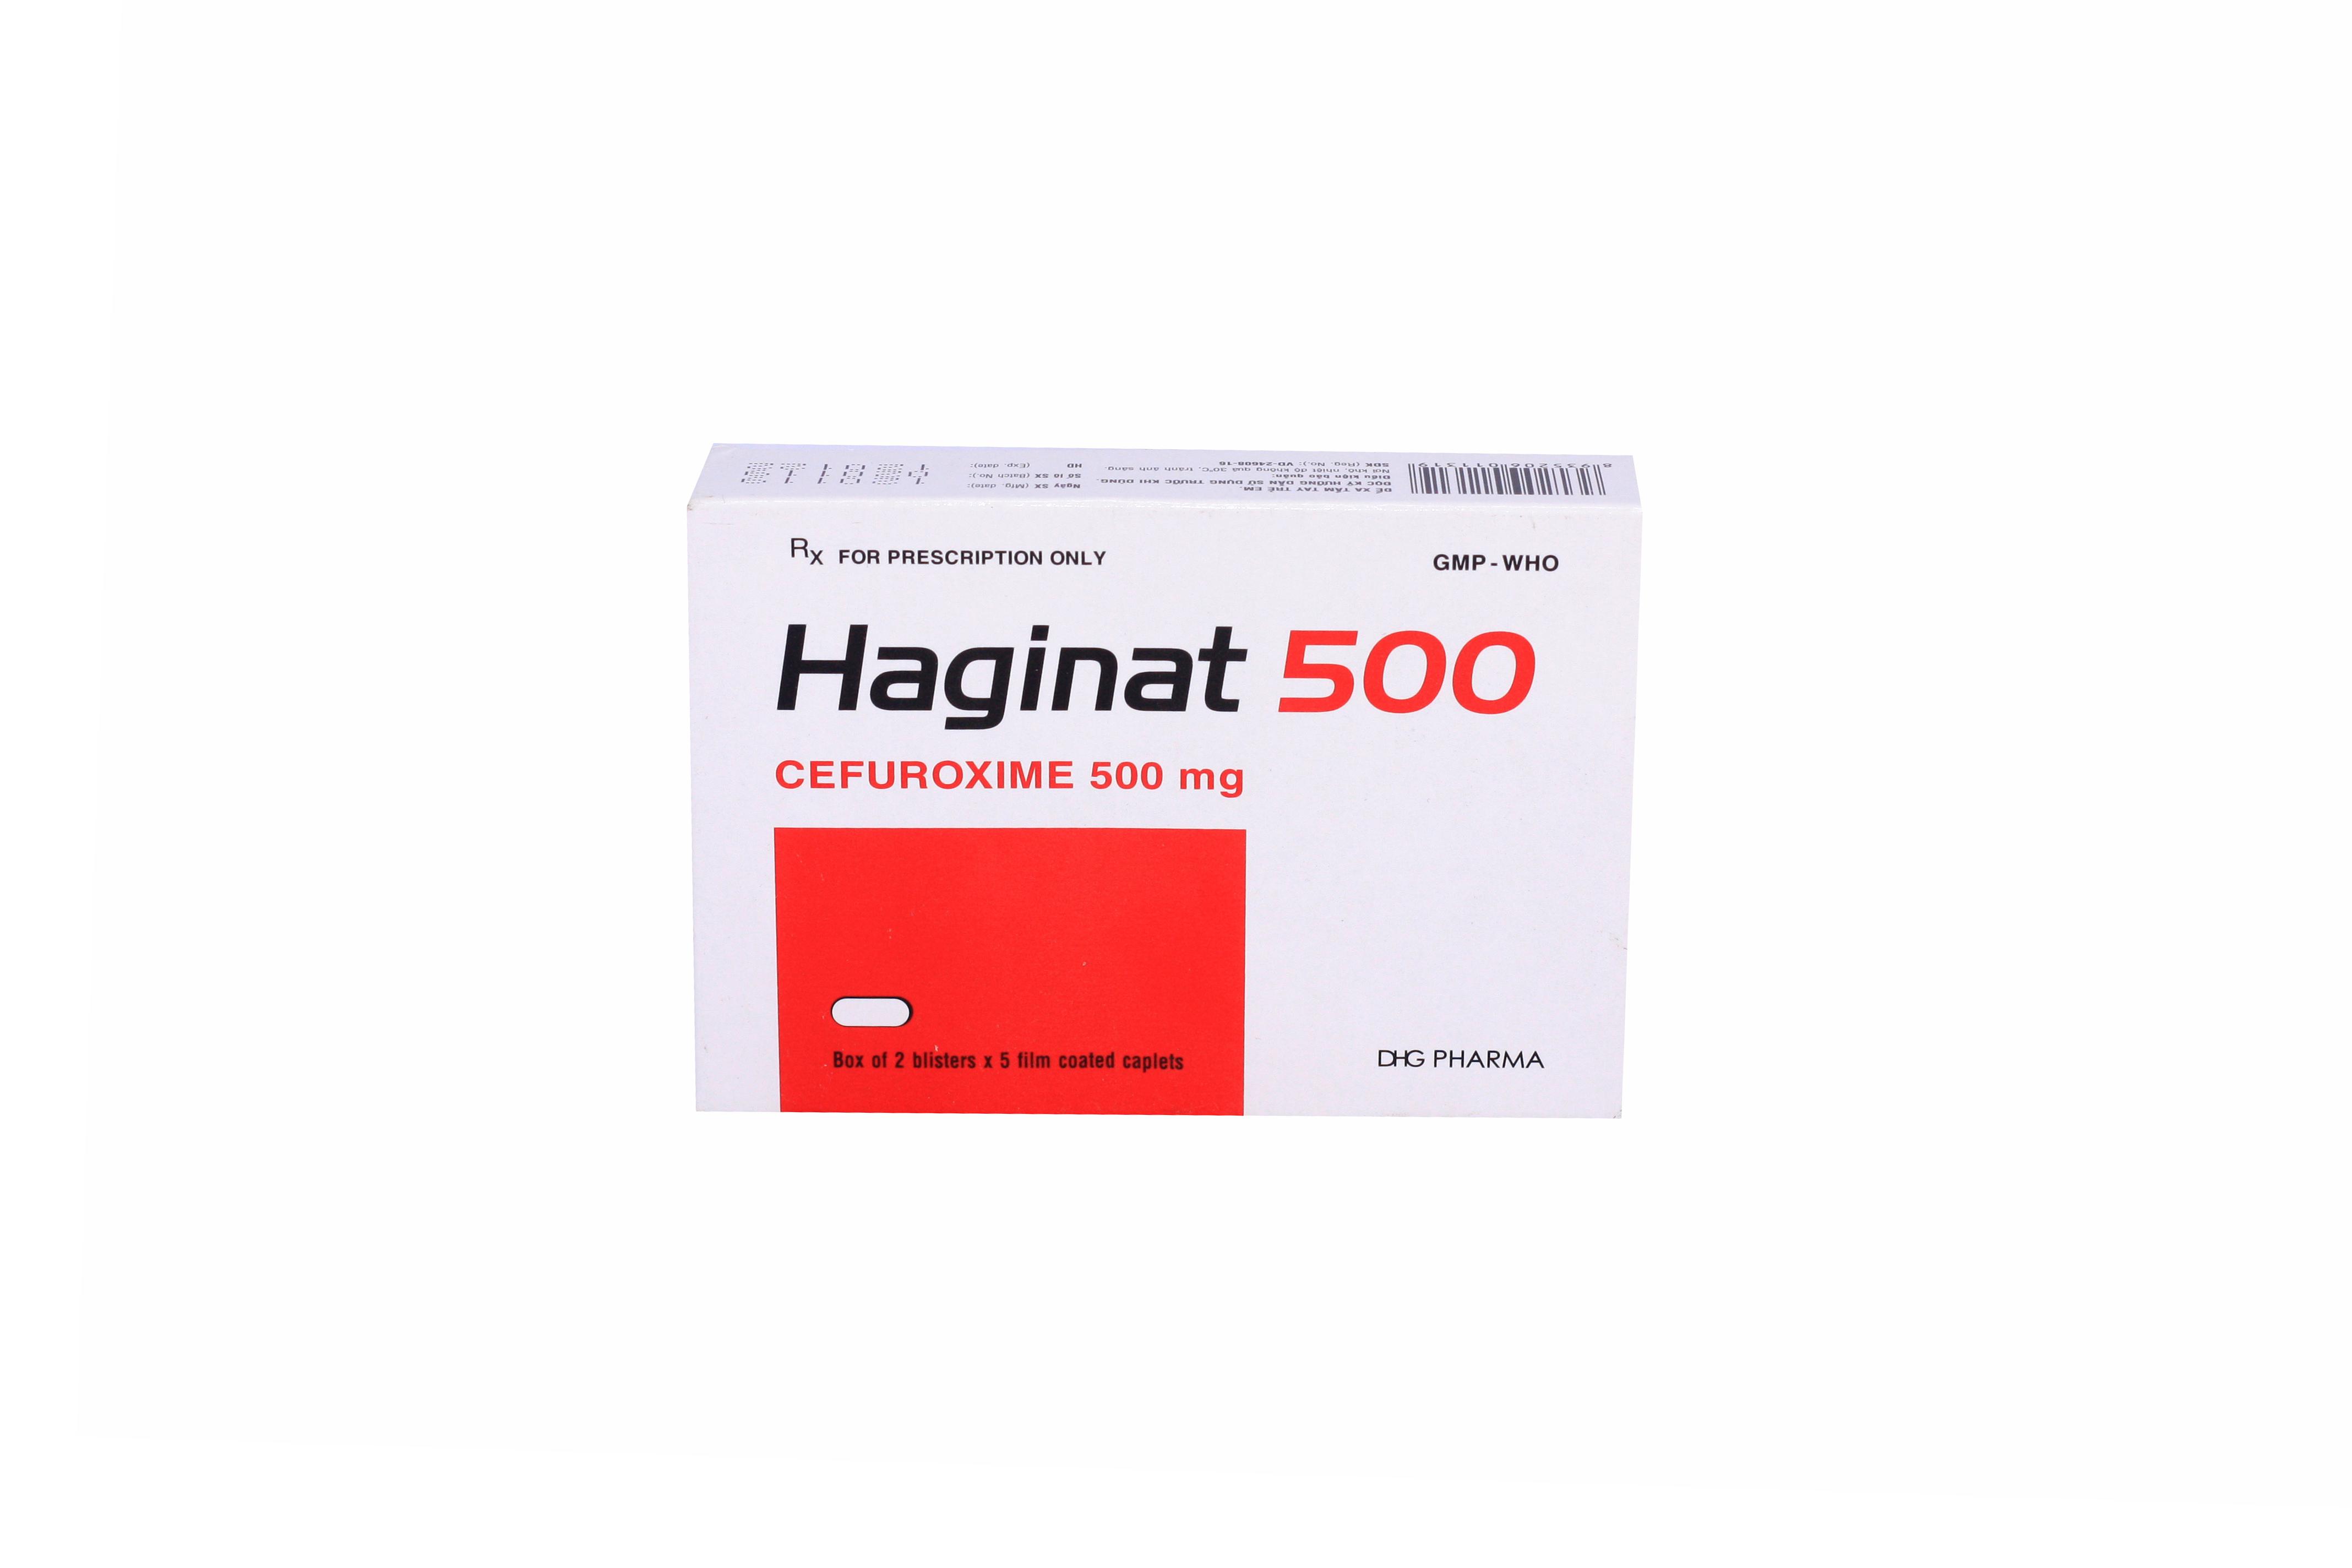 Haginat (Cefuroxim) 500mg DHG Pharma (H/10v)